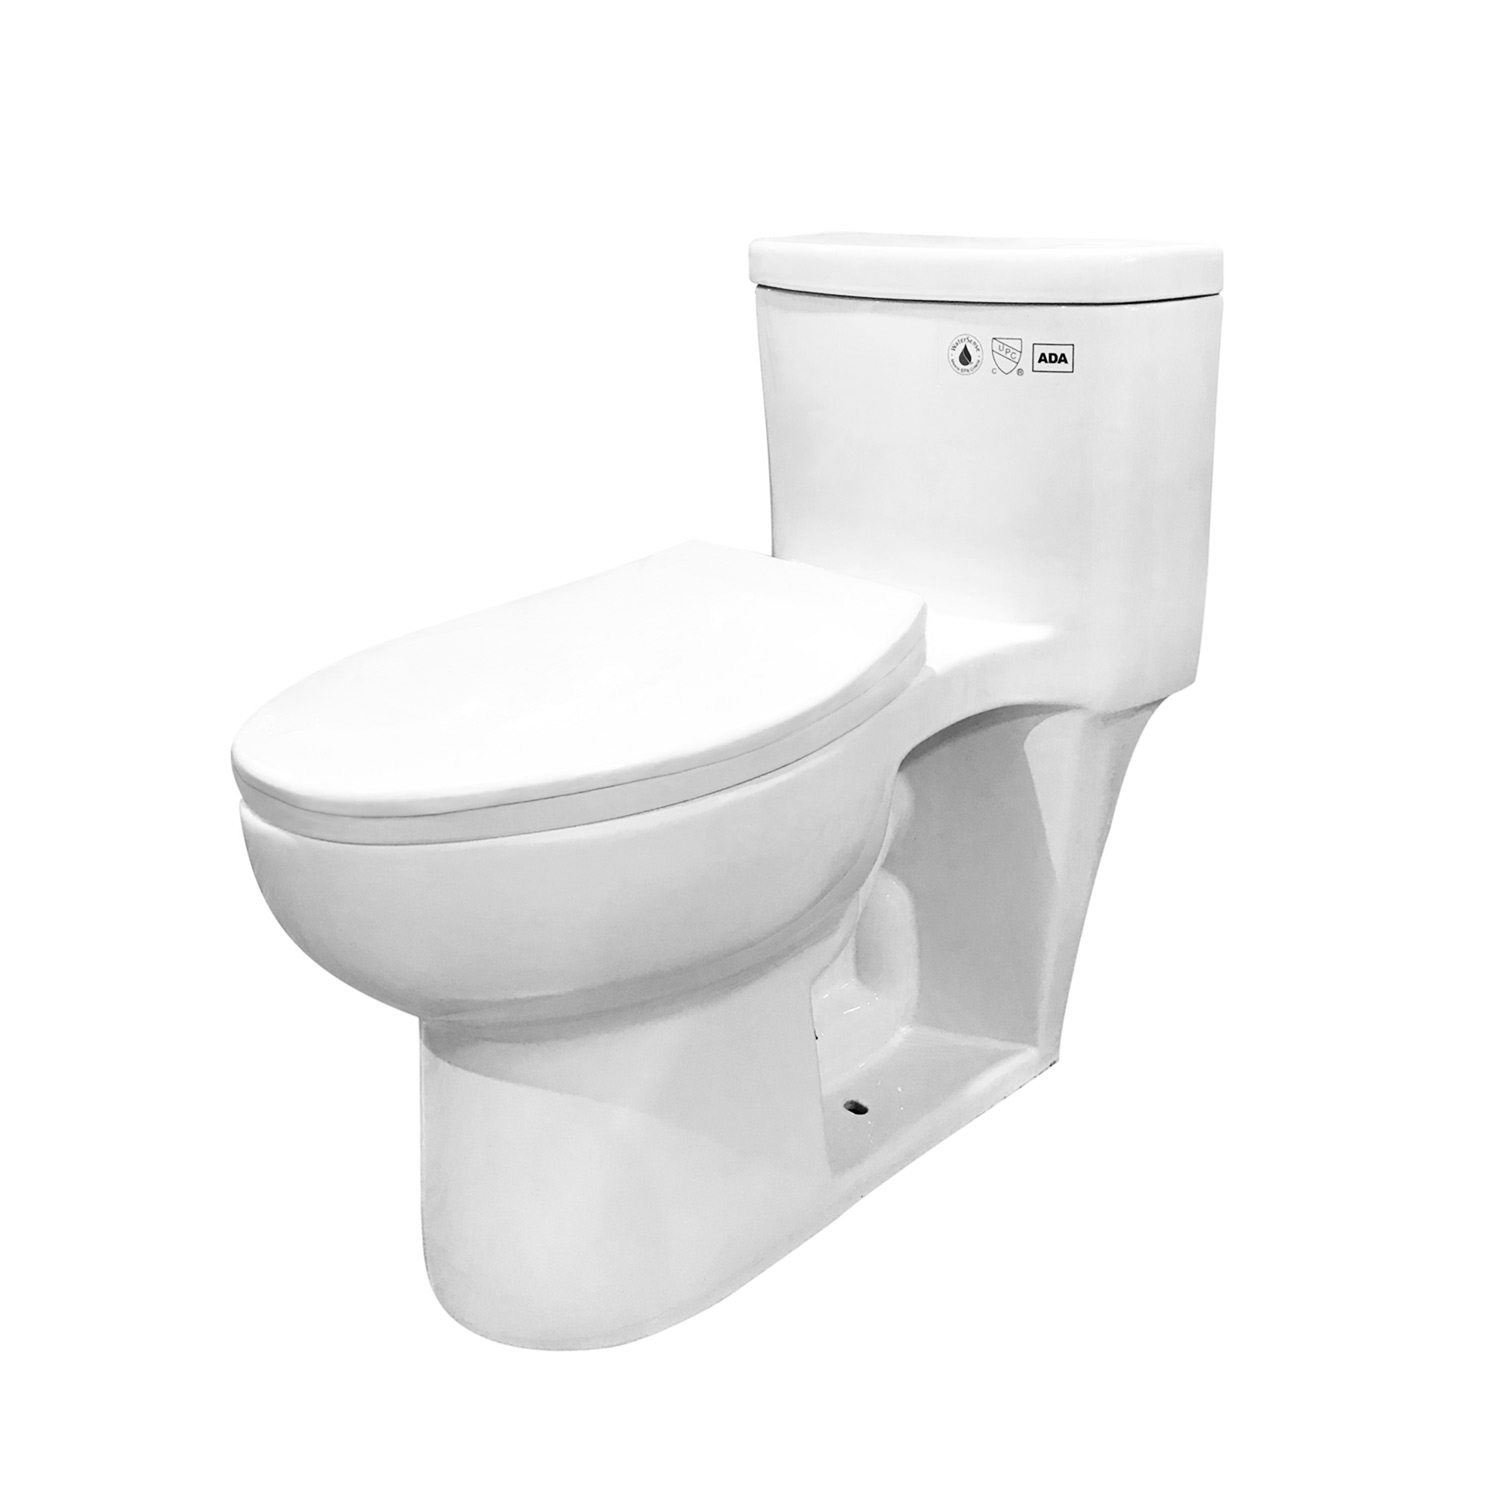 Toilette monopièce siphonique simple, hauteur de 720mm